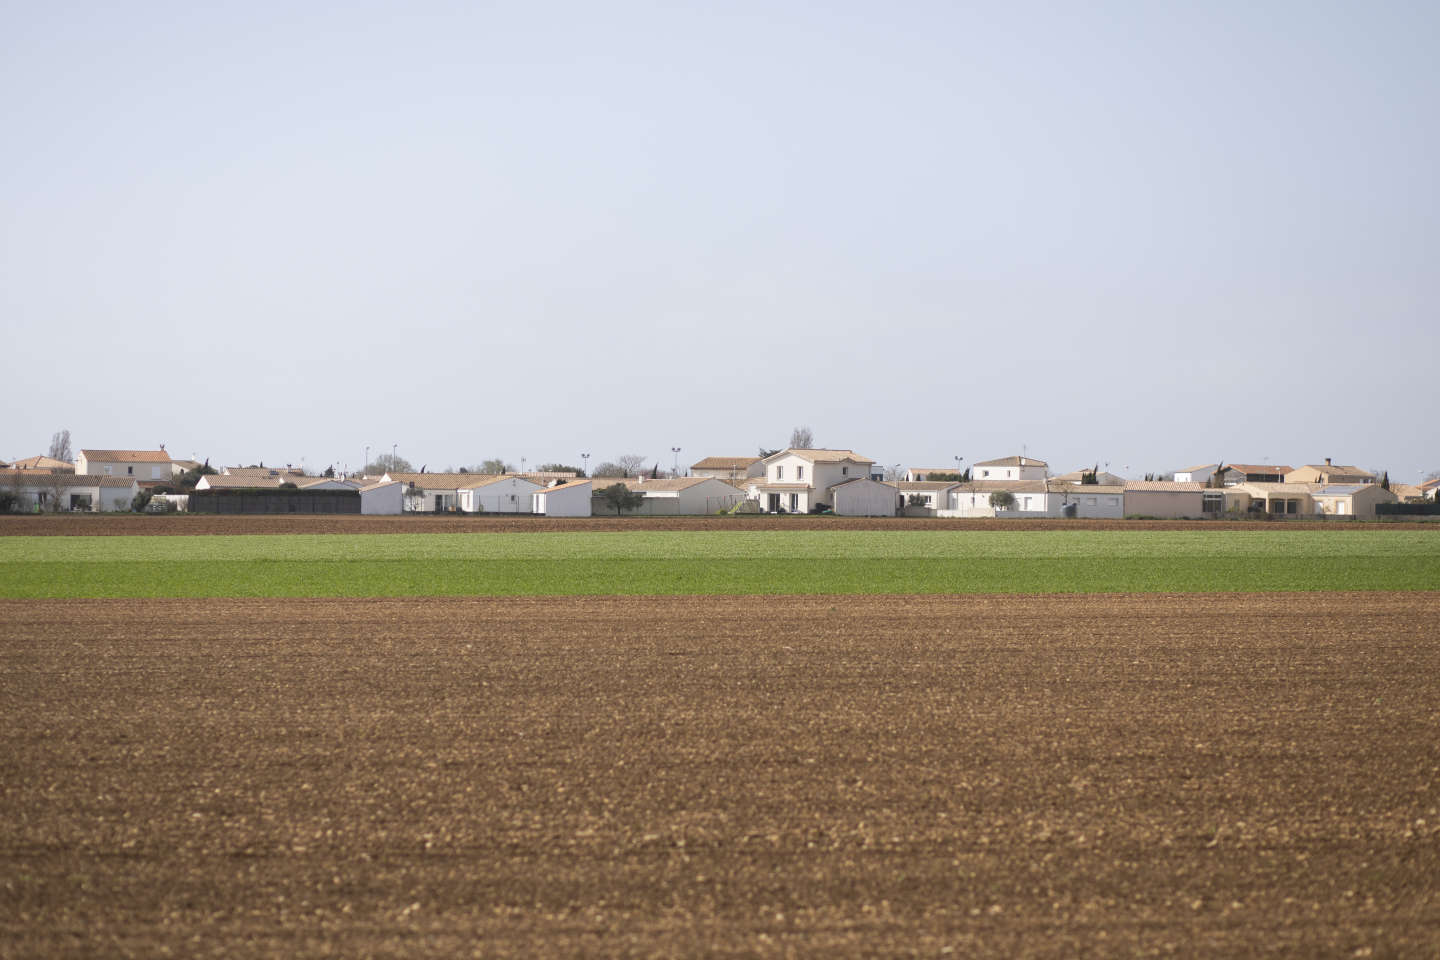 Exposée à un herbicide à des niveaux record, l’agglomération de La Rochelle demande un moratoire sur son utilisation